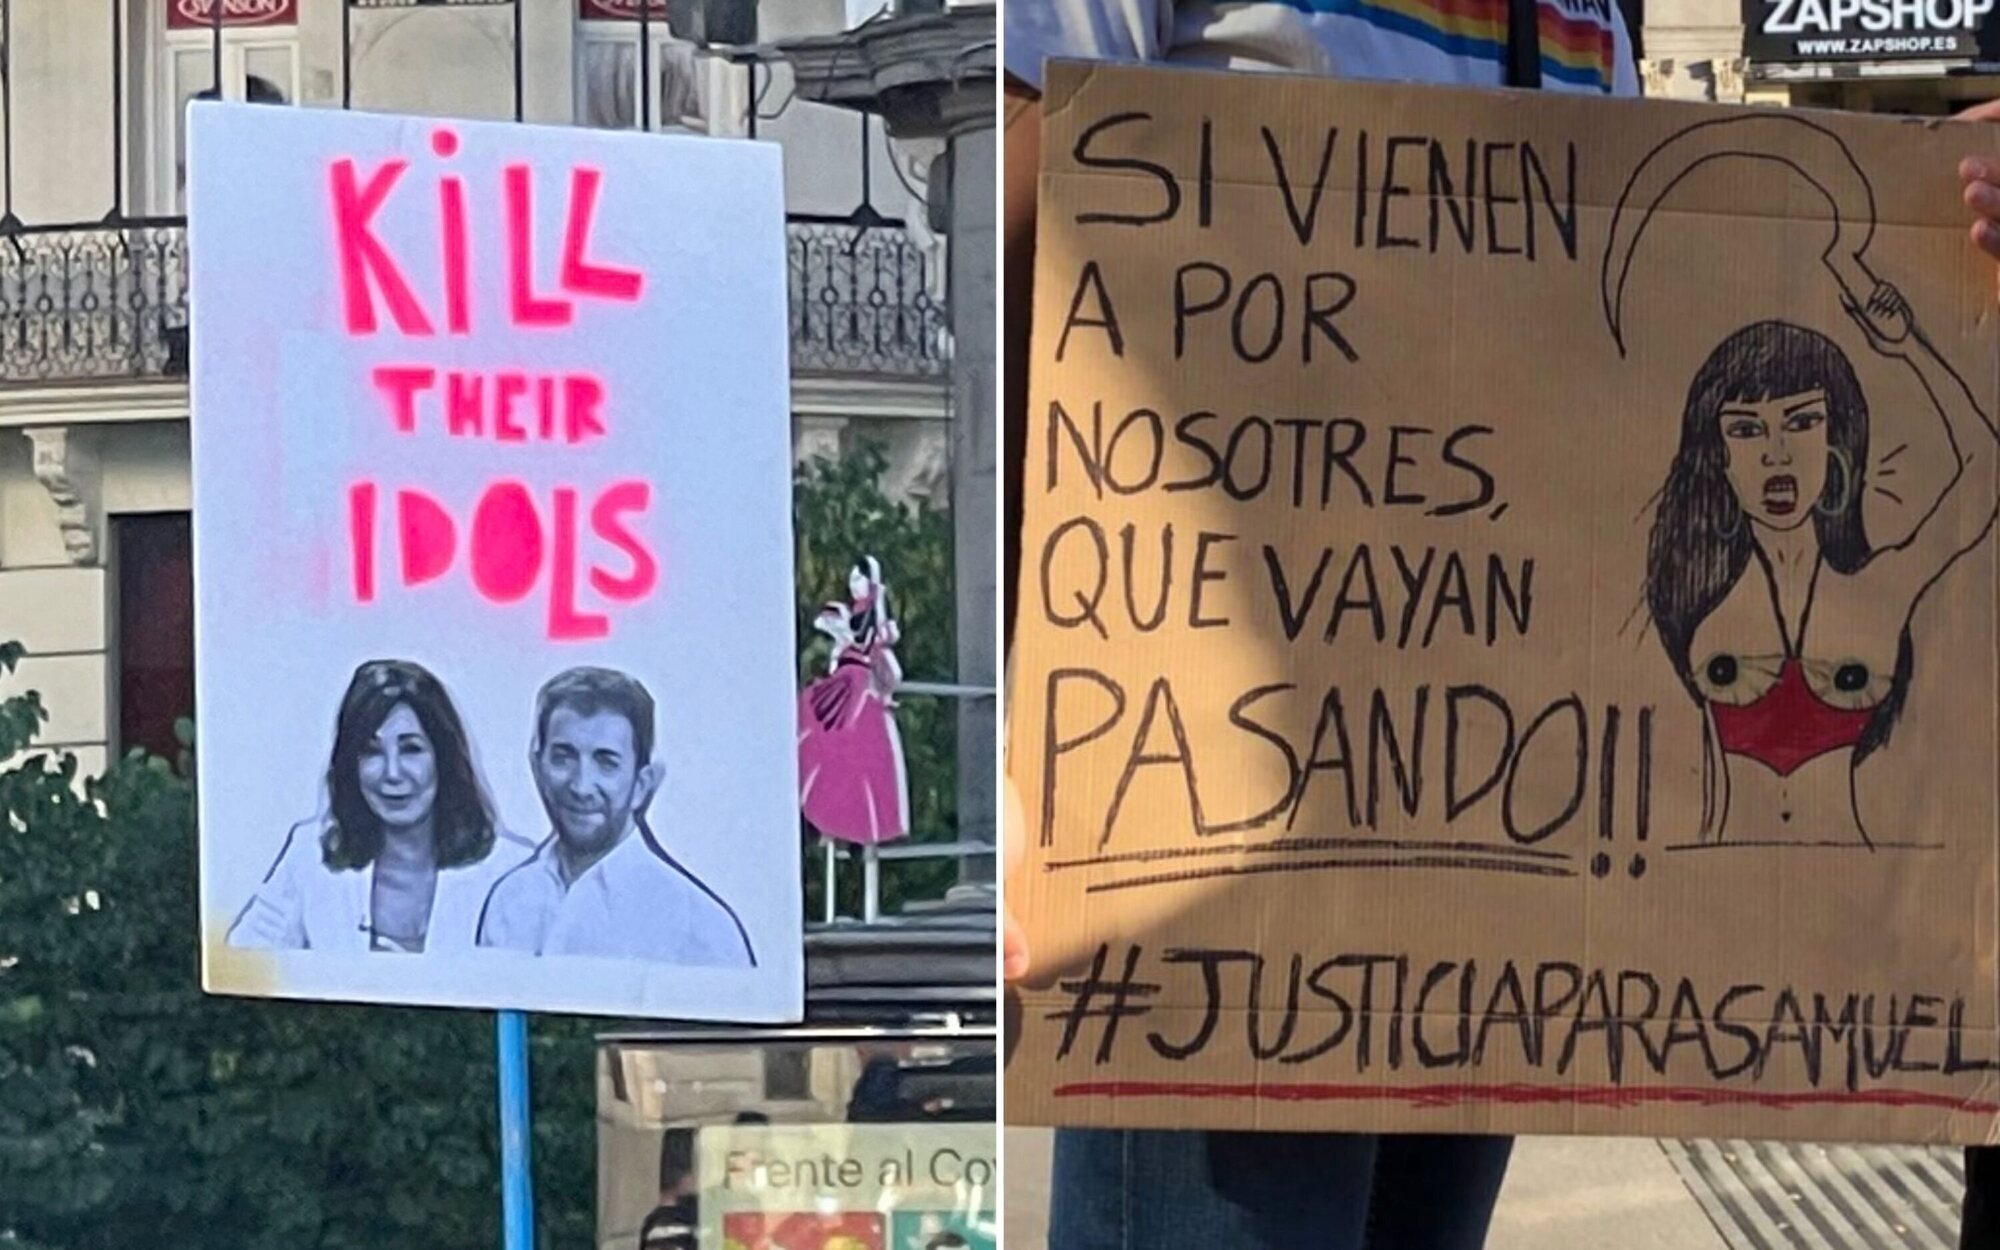 La sociedad clama justicia por el crimen de Samuel con frases de 'Veneno' y pullas a Ana Rosa Quintana